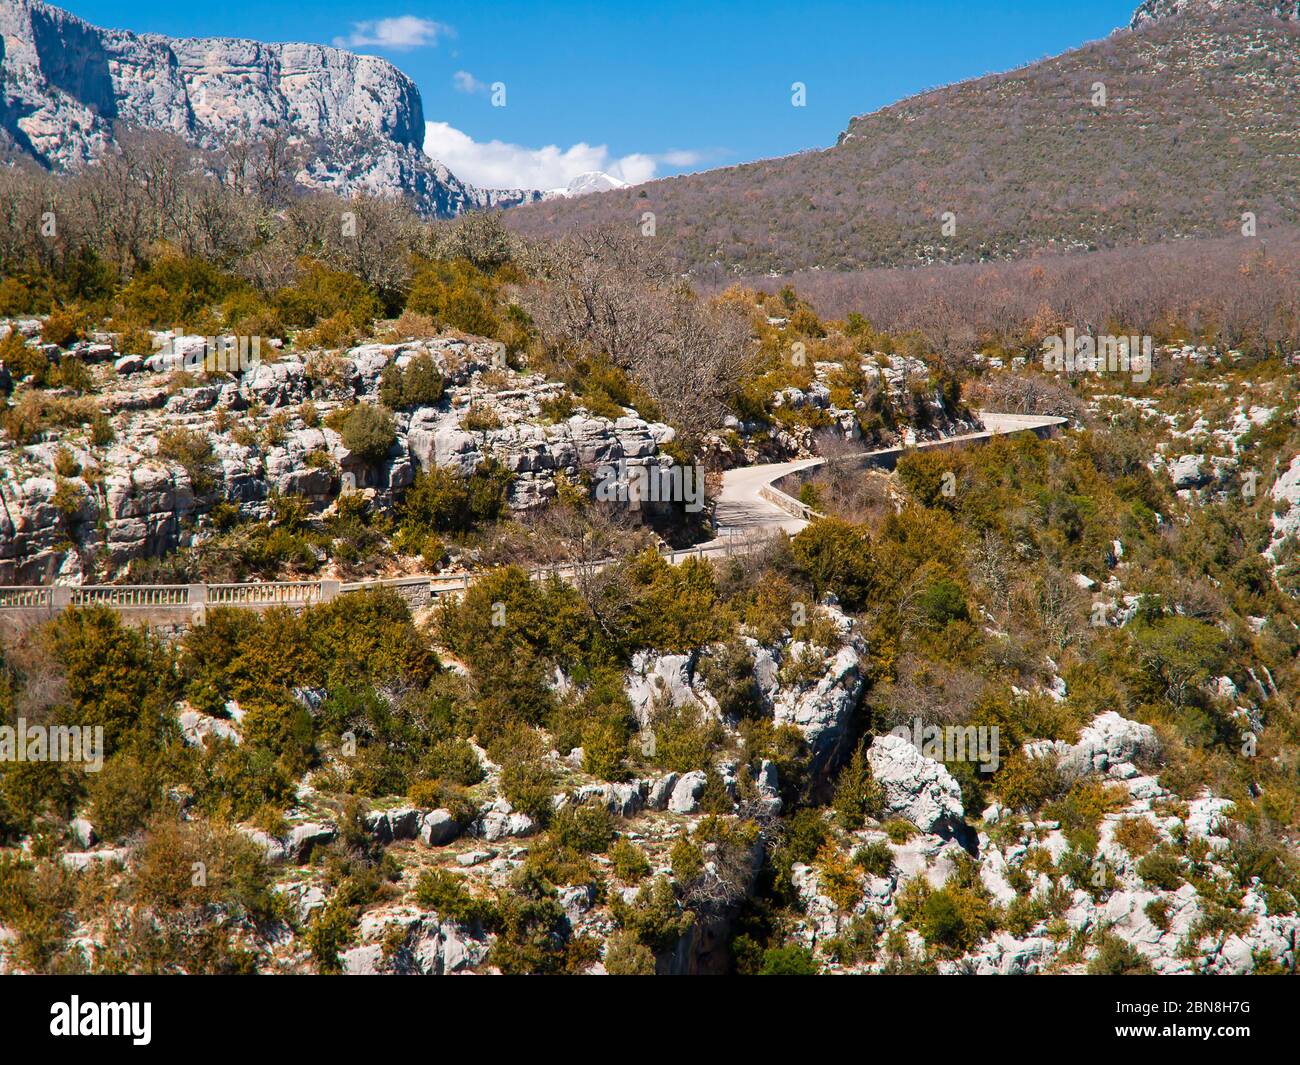 Route le long de la gorge du Verdon (Gorges du Verdon), un canyon fluvial de la Côte d'Azur, Provence, France Banque D'Images